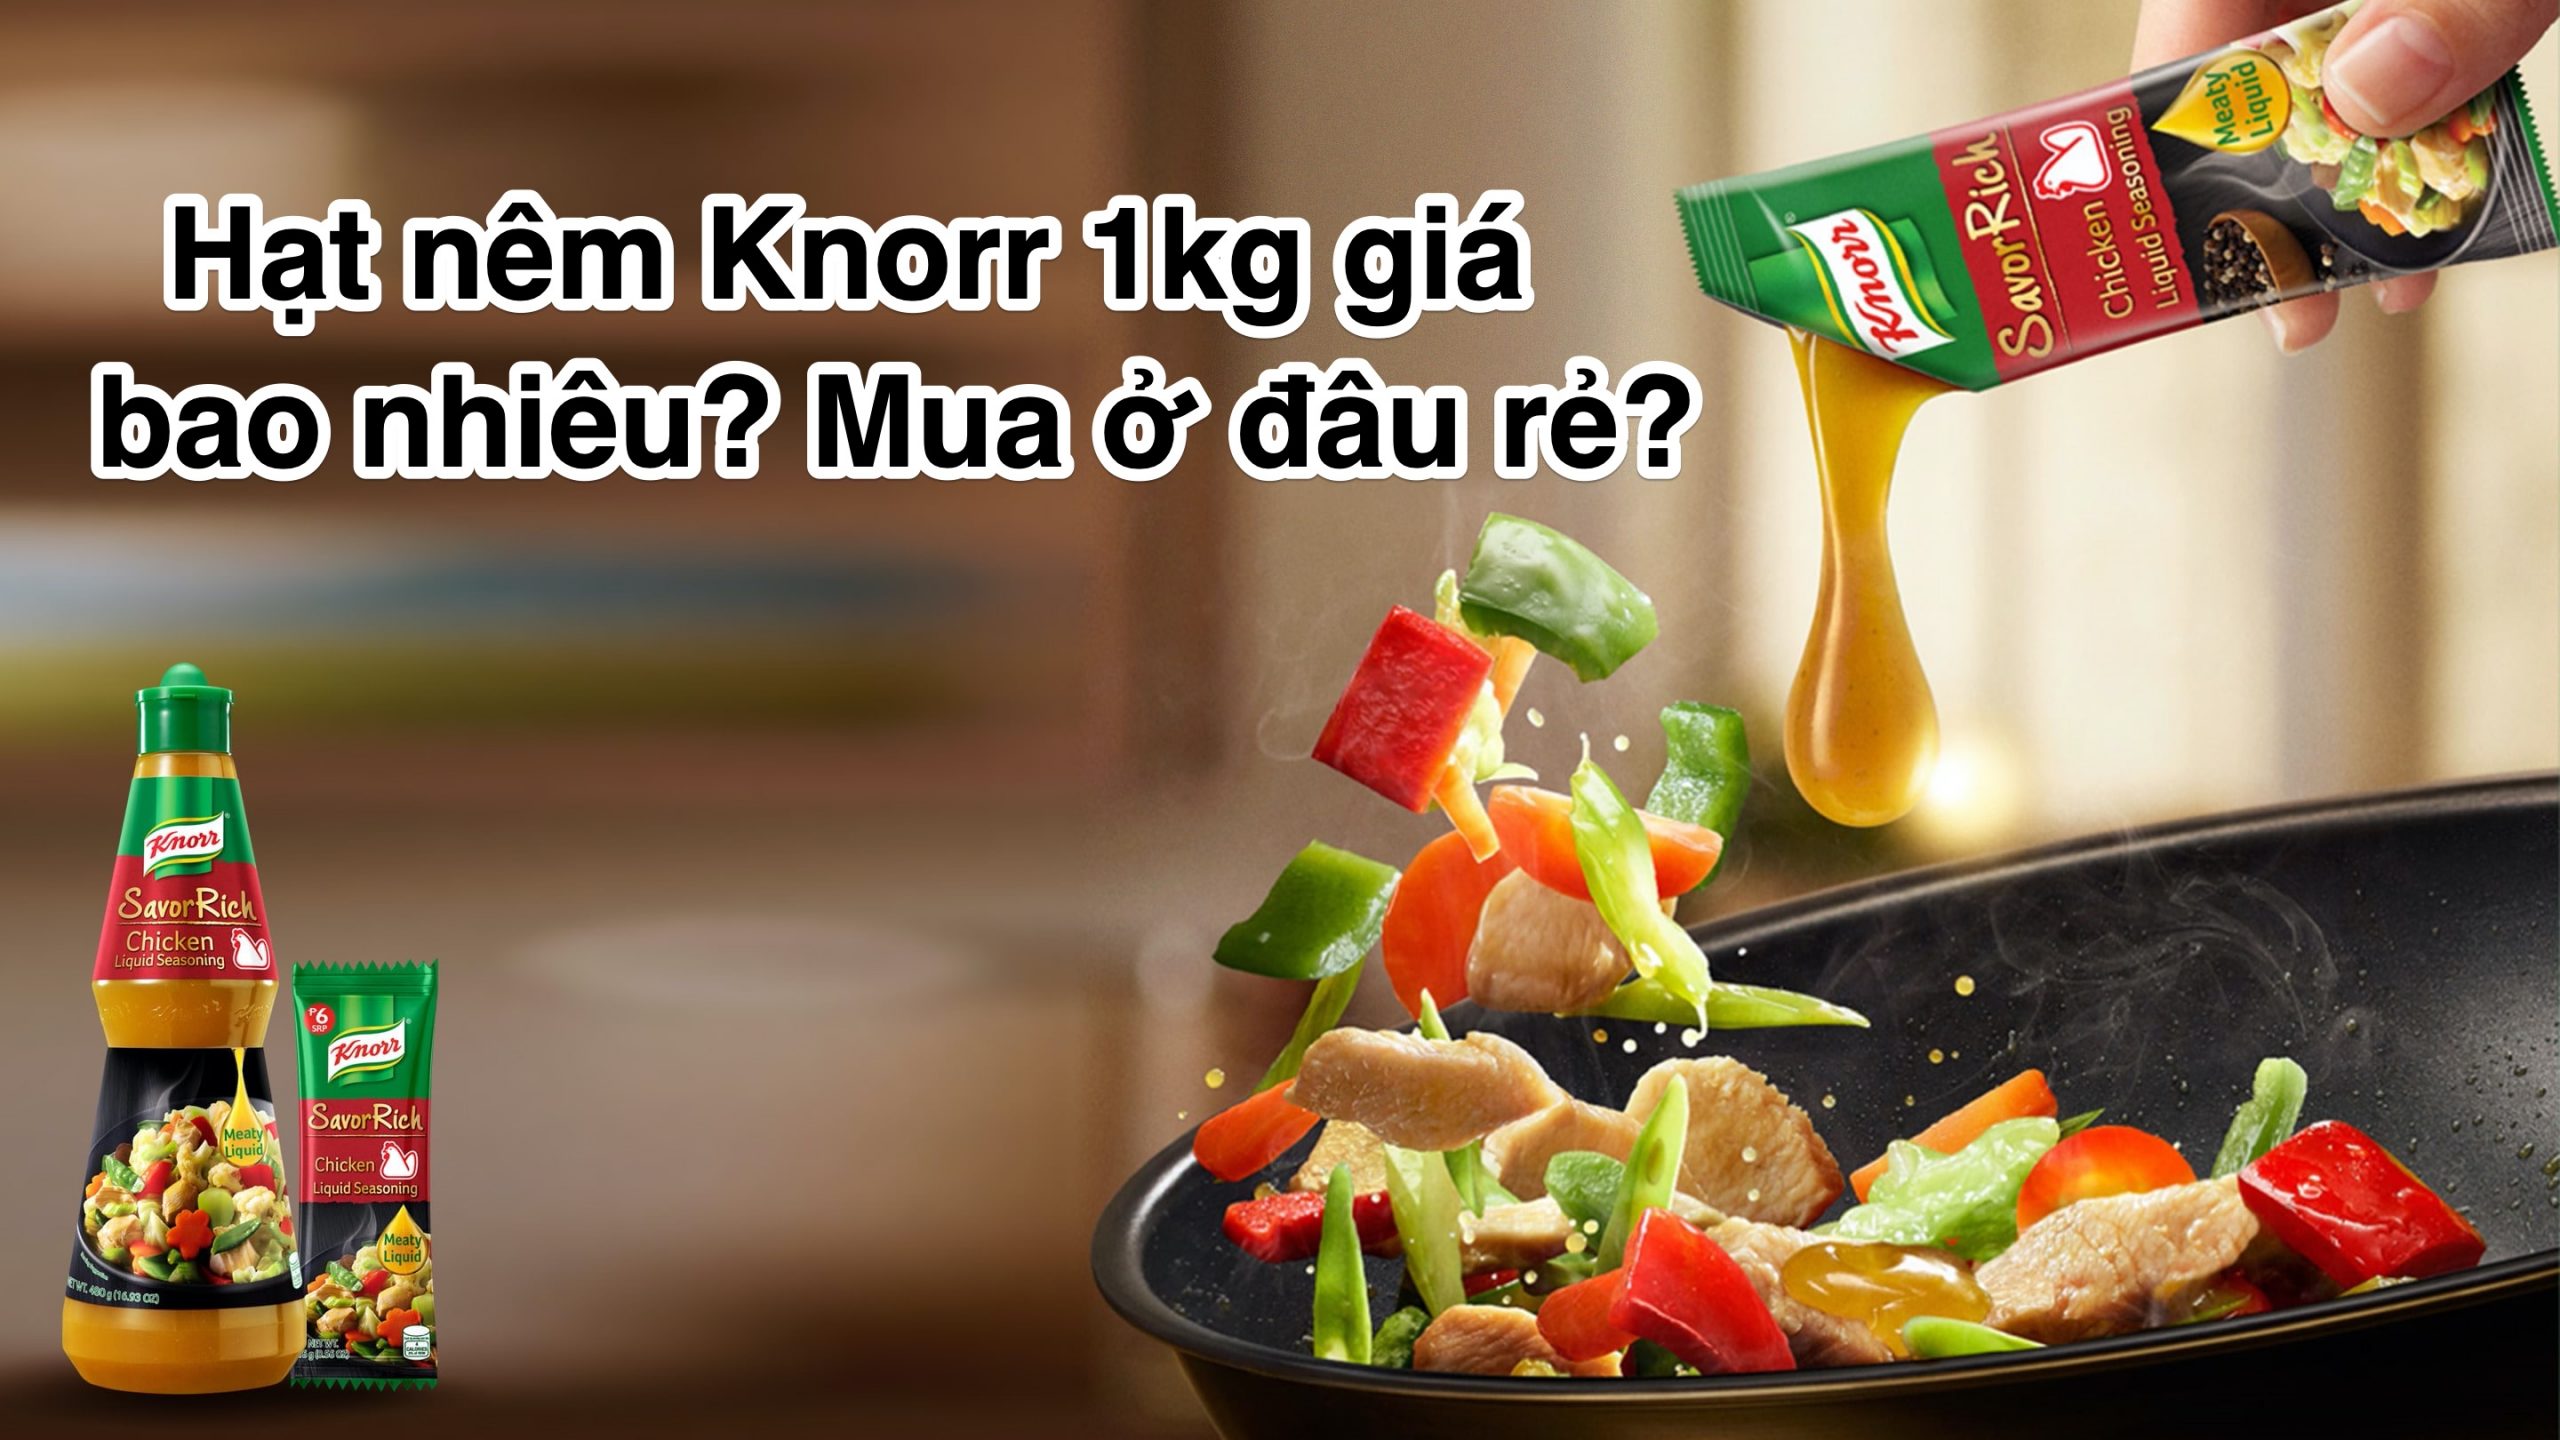 Hạt nêm Knorr 1kg giá bao nhiêu? Mua ở đâu rẻ?